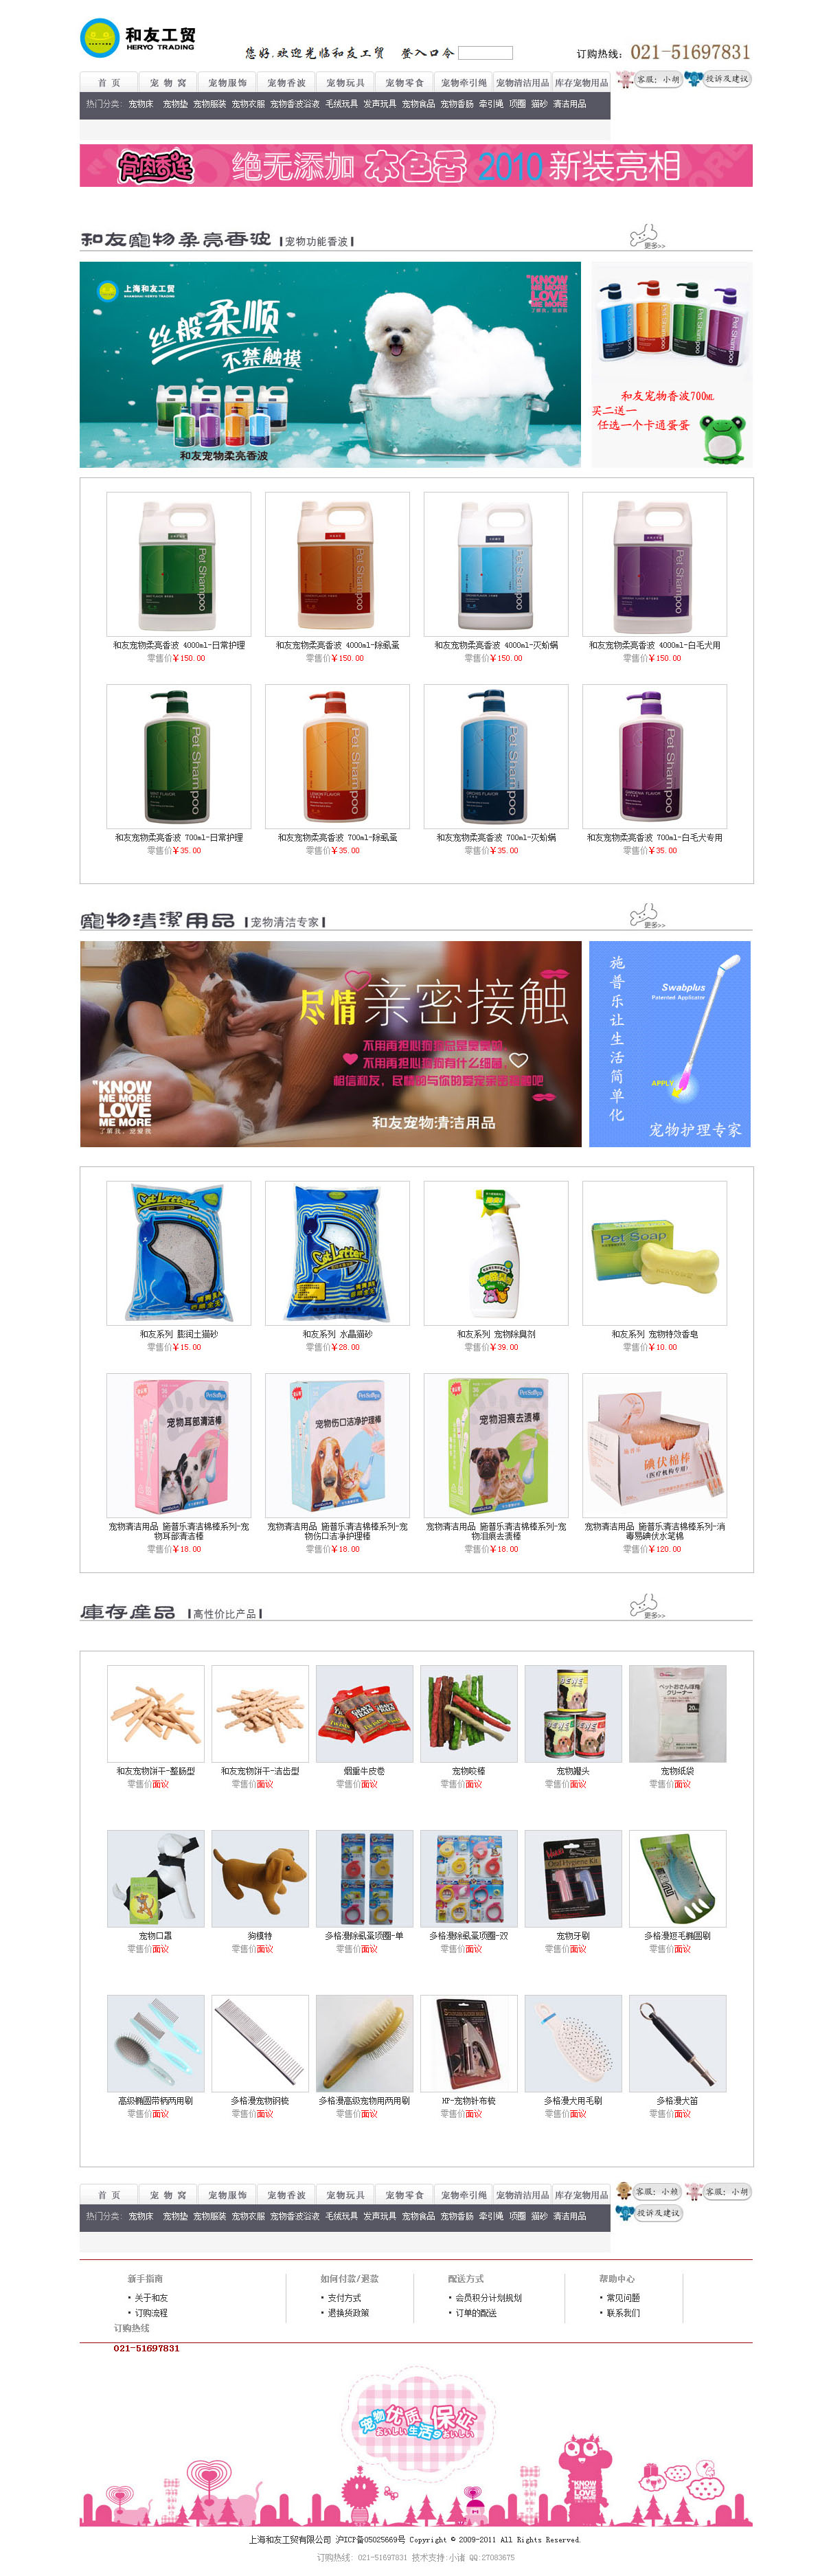 上海志勋网络签约上海和友工贸有限公司门户型网站建设项目